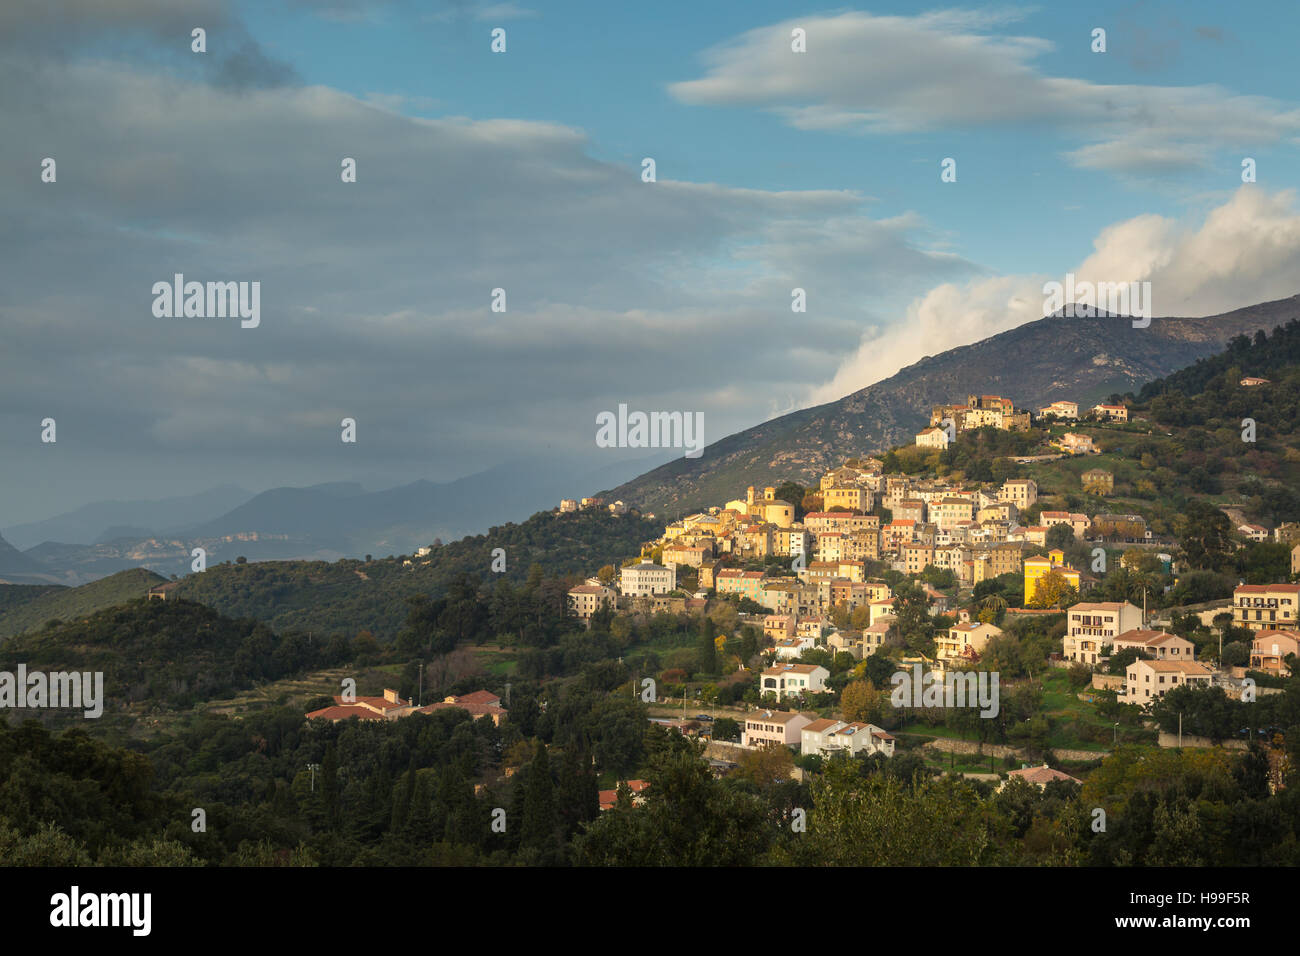 Après-midi, soleil qui brille sur les maisons colorées du village d'Oletta sur une colline dans la région du nord de la Corse Nebbio Banque D'Images